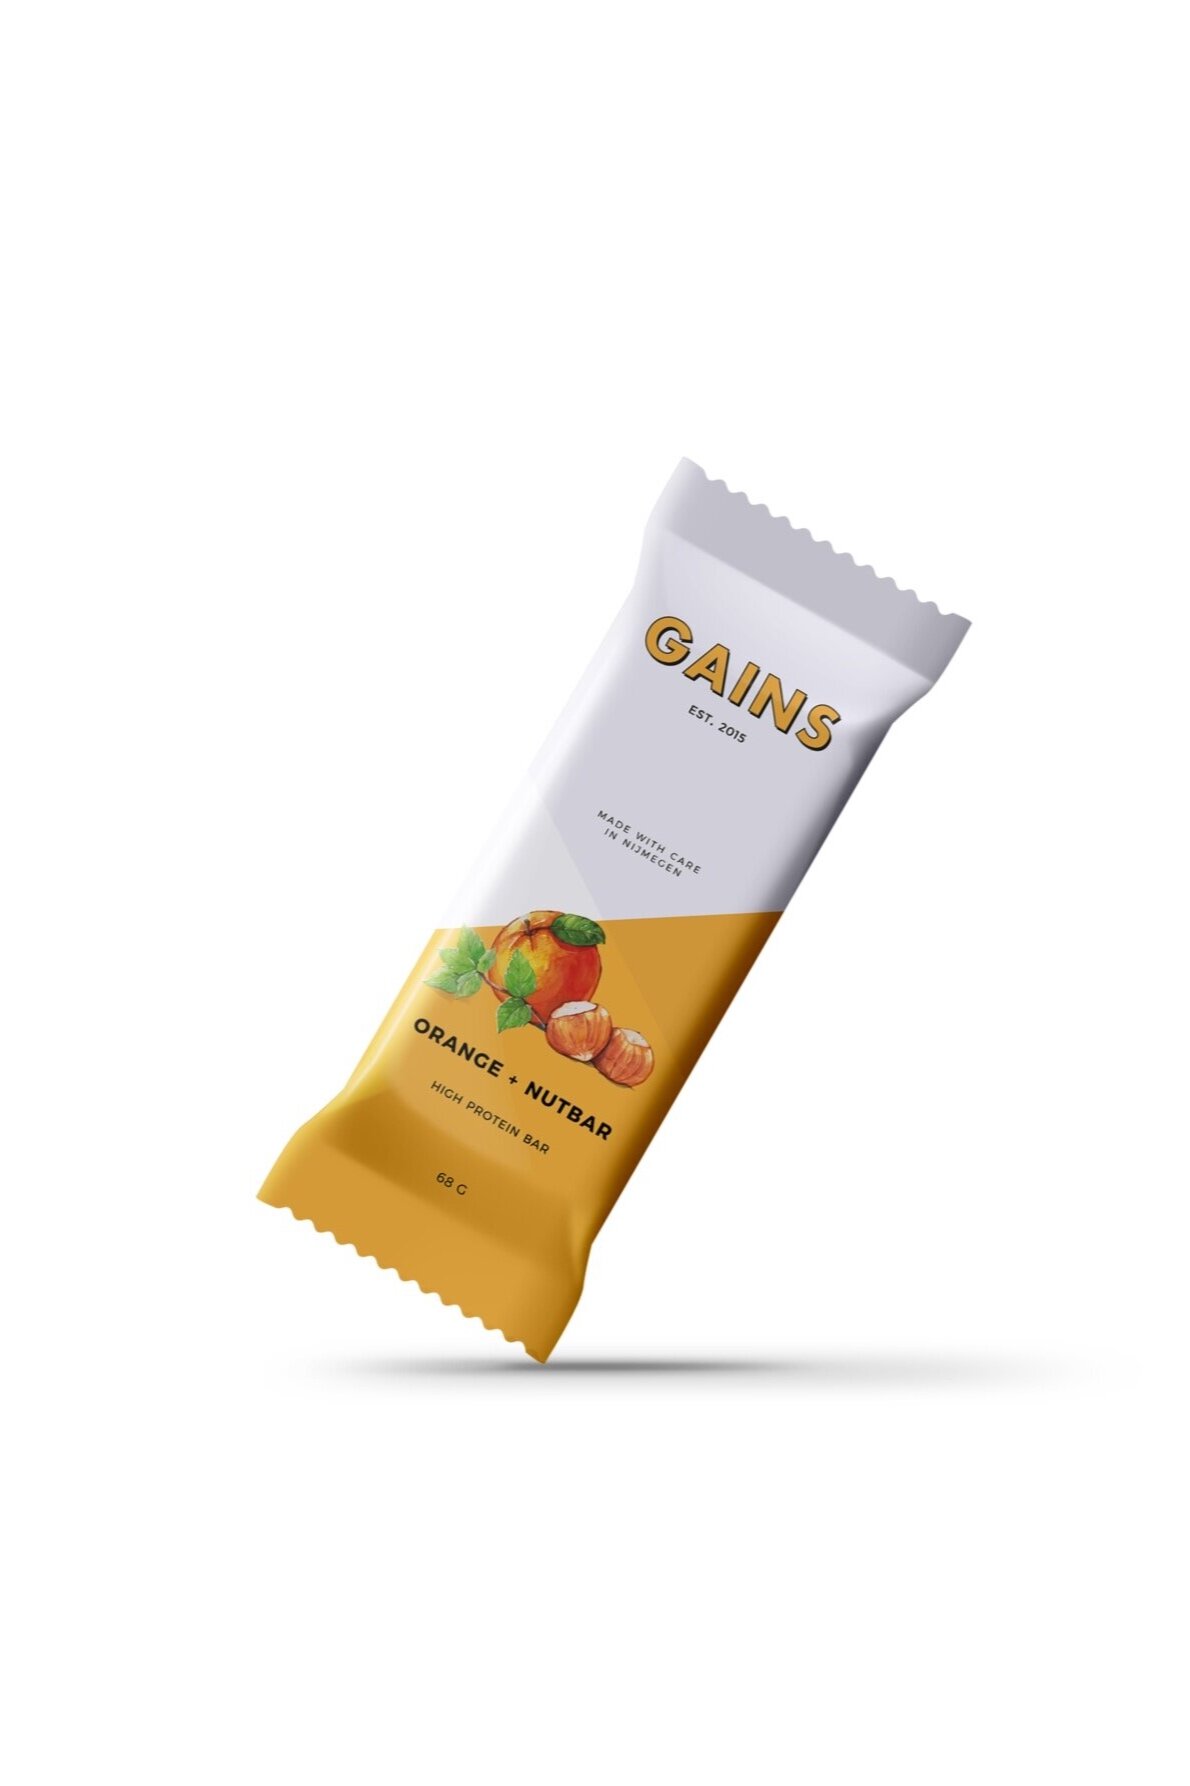 GAINS_Orange_front_Packaging.jpg